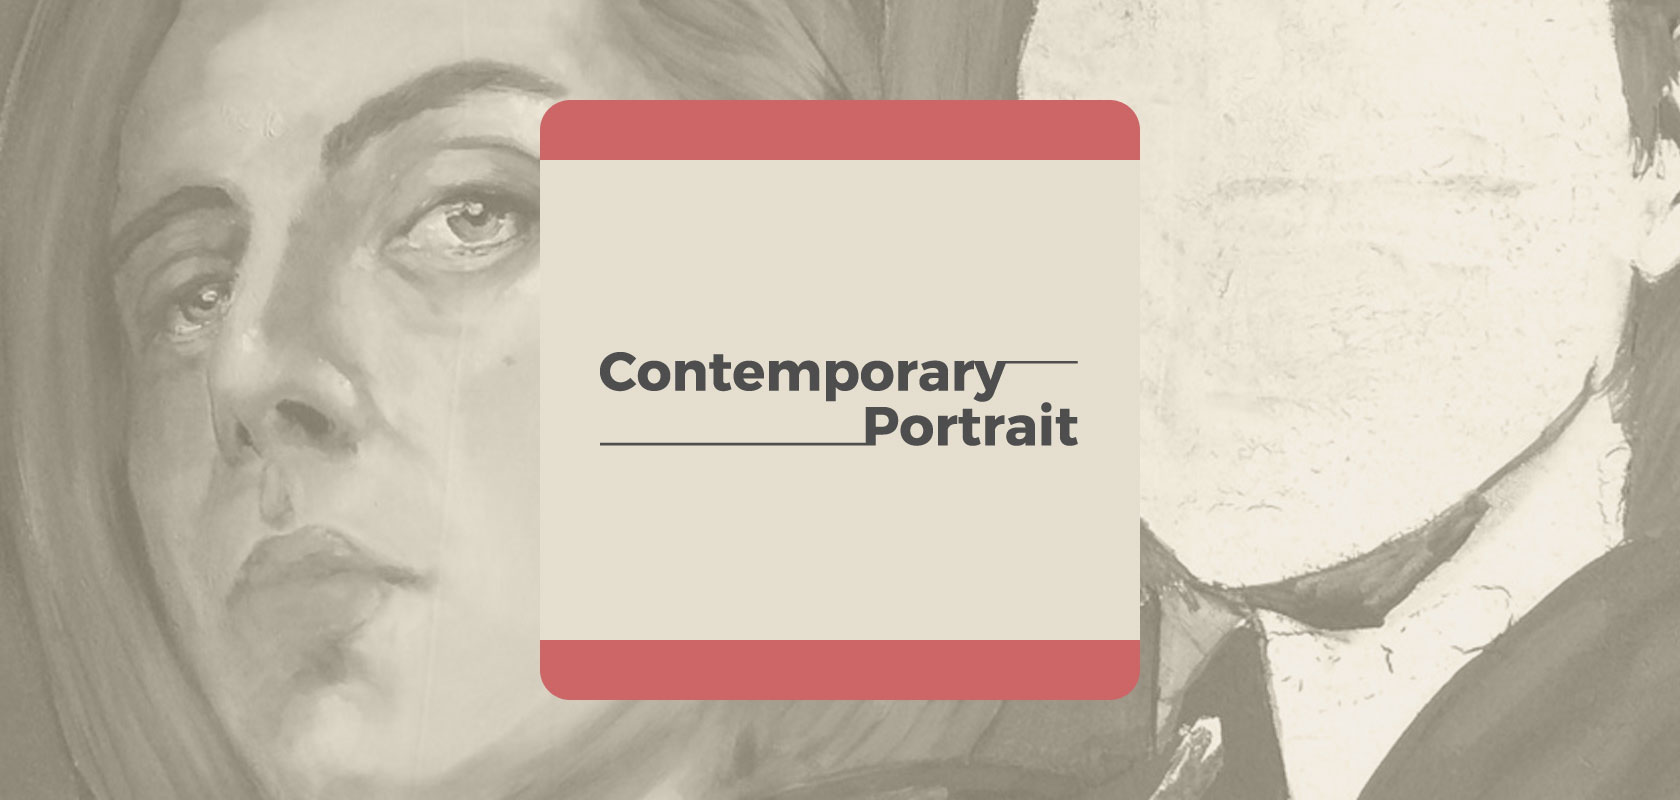 Contemporary Portrait : logo et fond